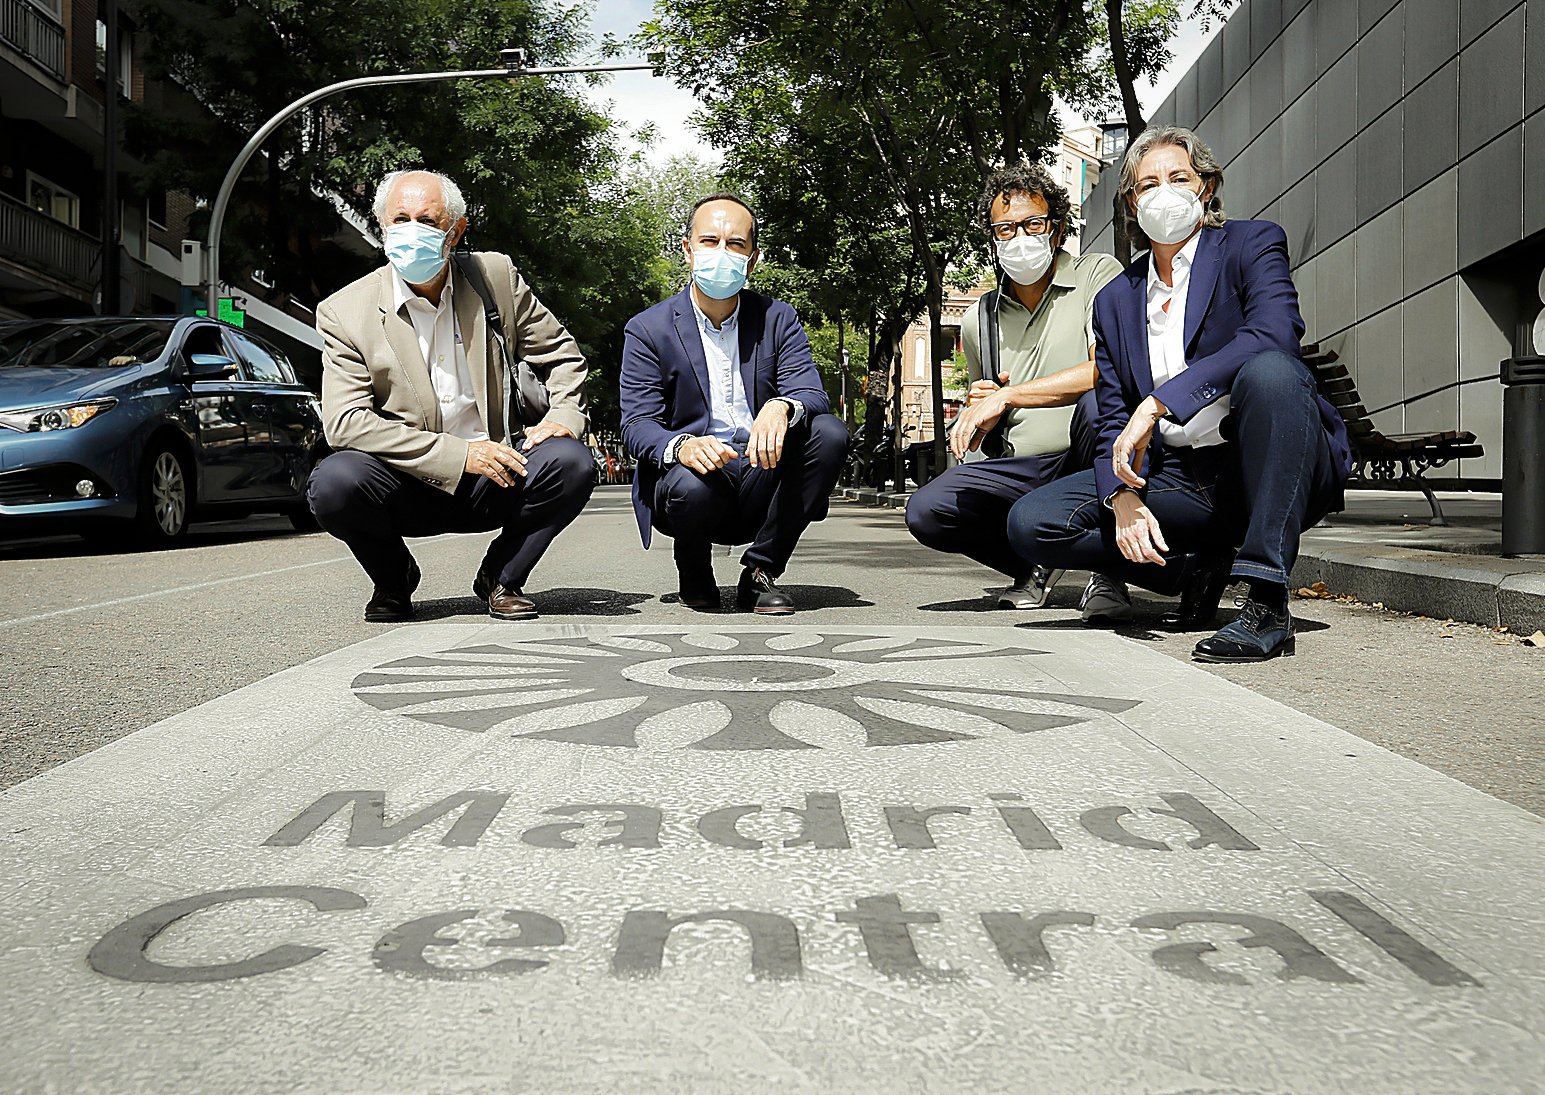 Luis Cueto, José Manuel Calvo, Felipe Llamas y Marta Higueras, los cuatro concejales del nuevo Grupo Mixto, este martes en una entrada de Madrid Central en la calle Atocha..